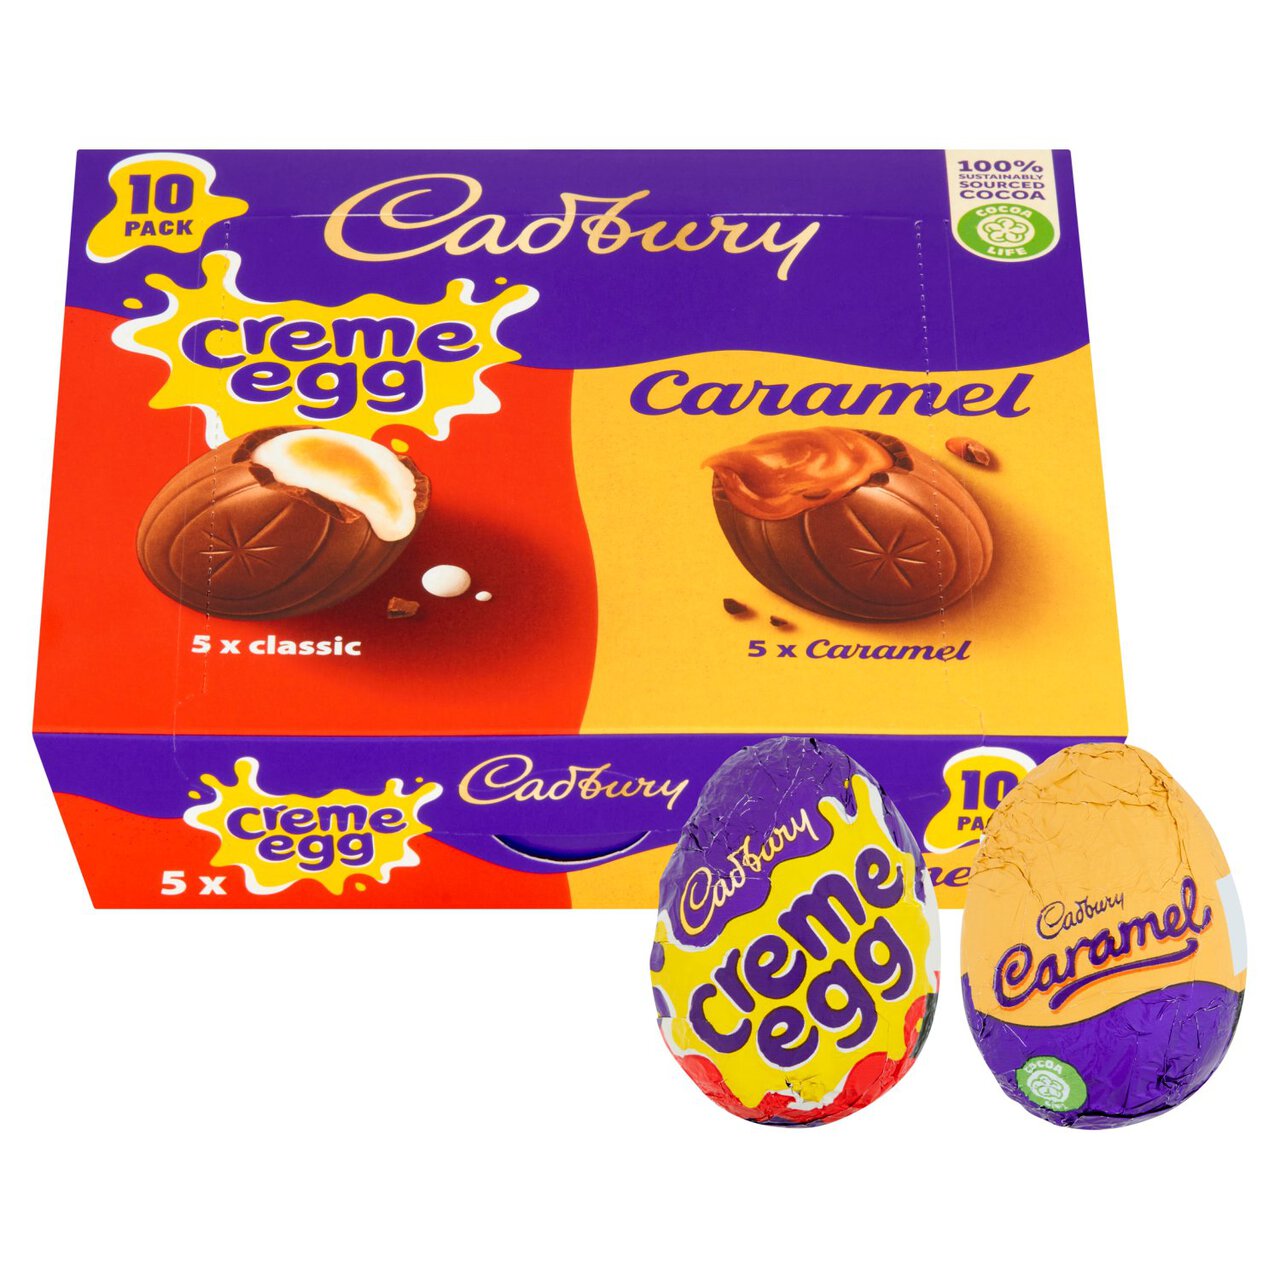 Cadbury Mixed Caramel & Creme Egg 10 Pack 400g